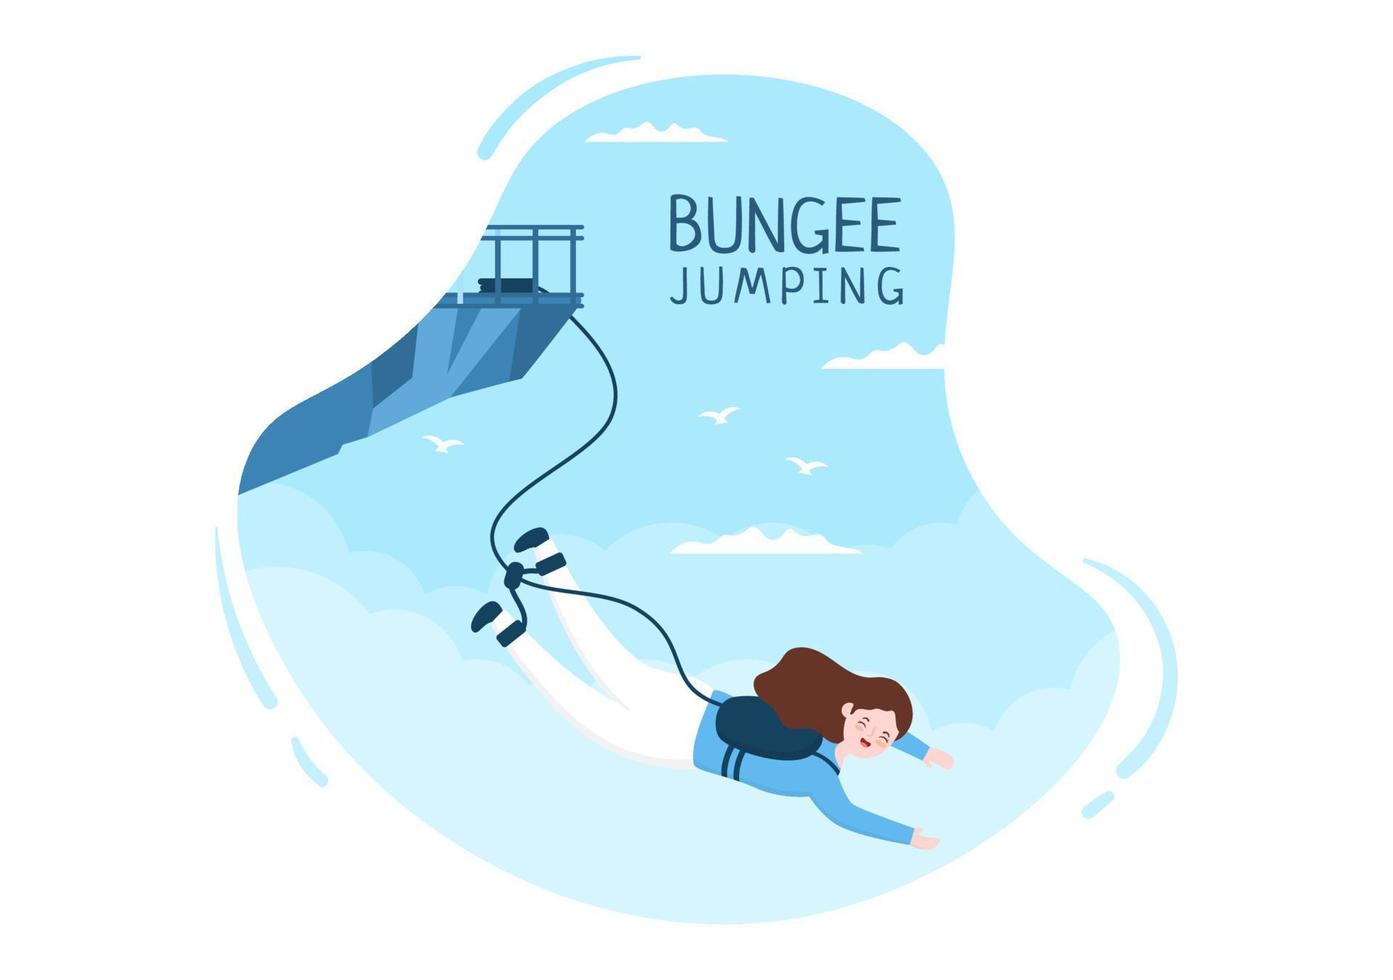 salto bungee de personas atadas con una cuerda elástica cayendo después de saltar desde una altura en dibujos animados planos ilustración vectorial de deporte extremo vector